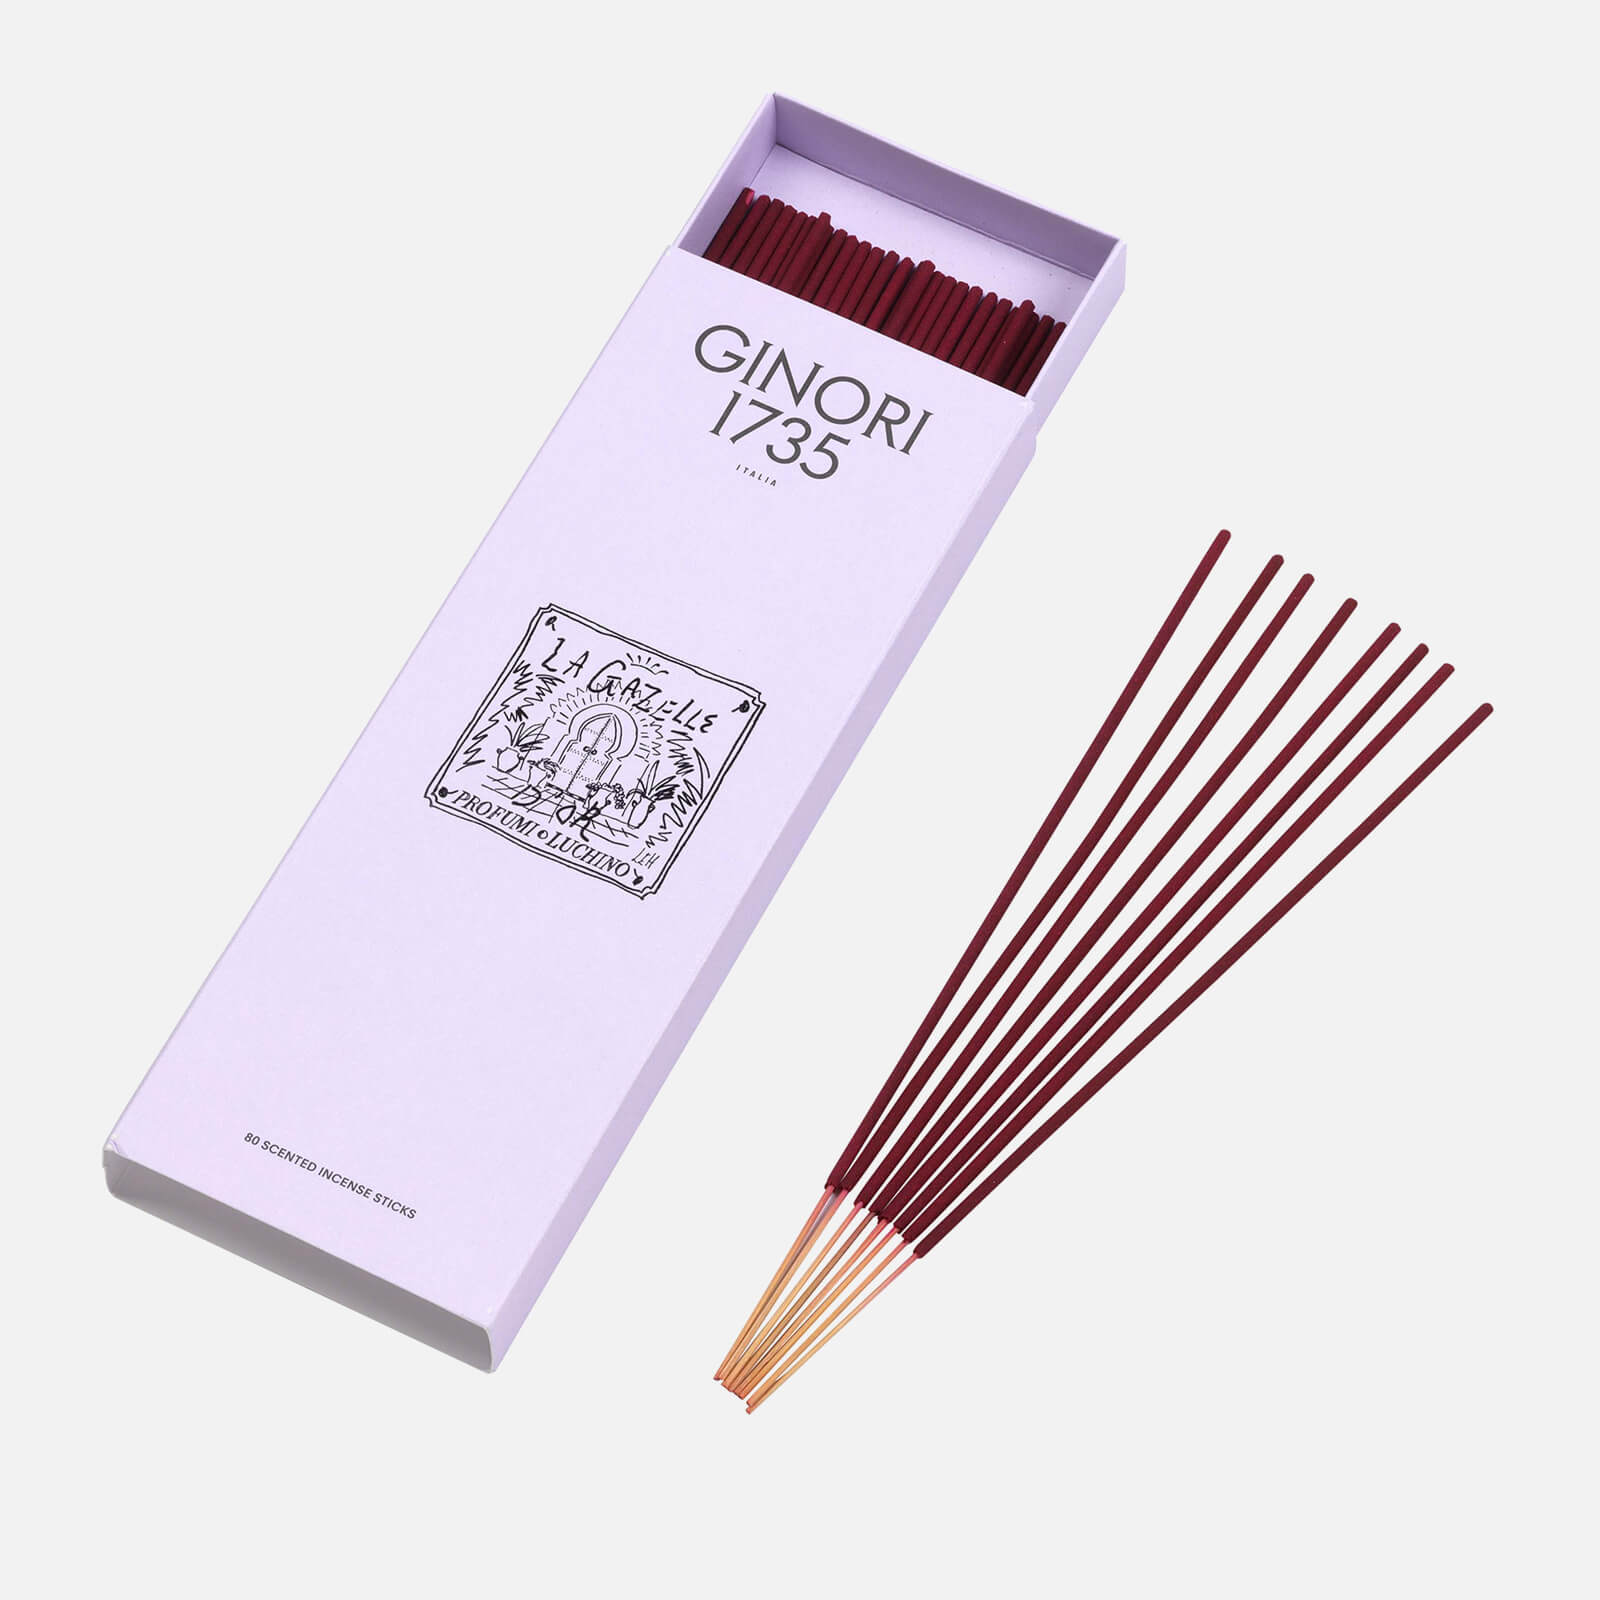 Luke Edward Hall Incense Sticks - La Gazelle D'or - 80pcs